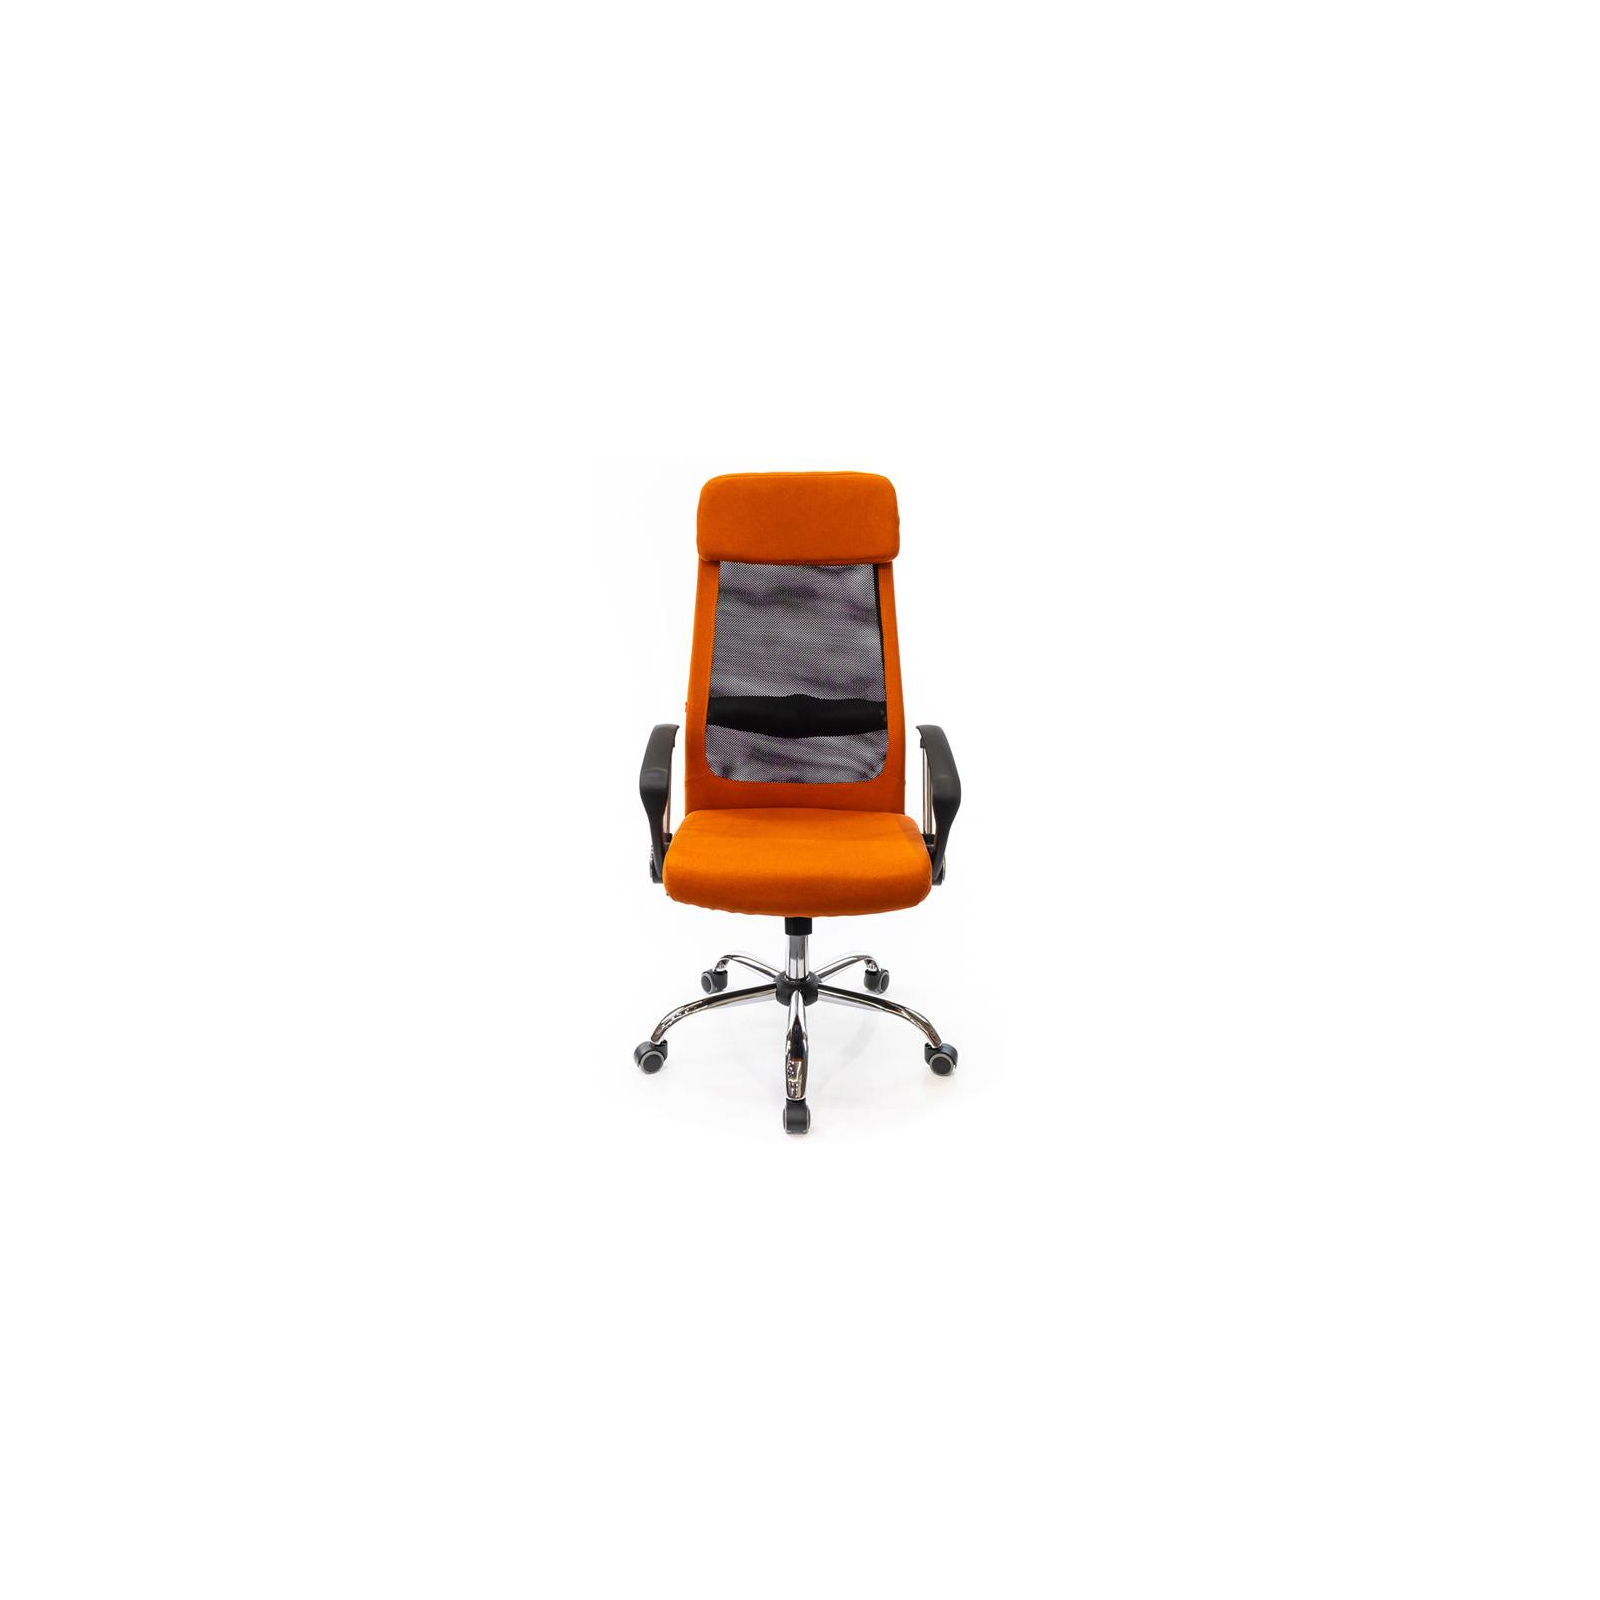 Офисное кресло Аклас Гилмор FX CH TILT Оранжевое (11032) изображение 2